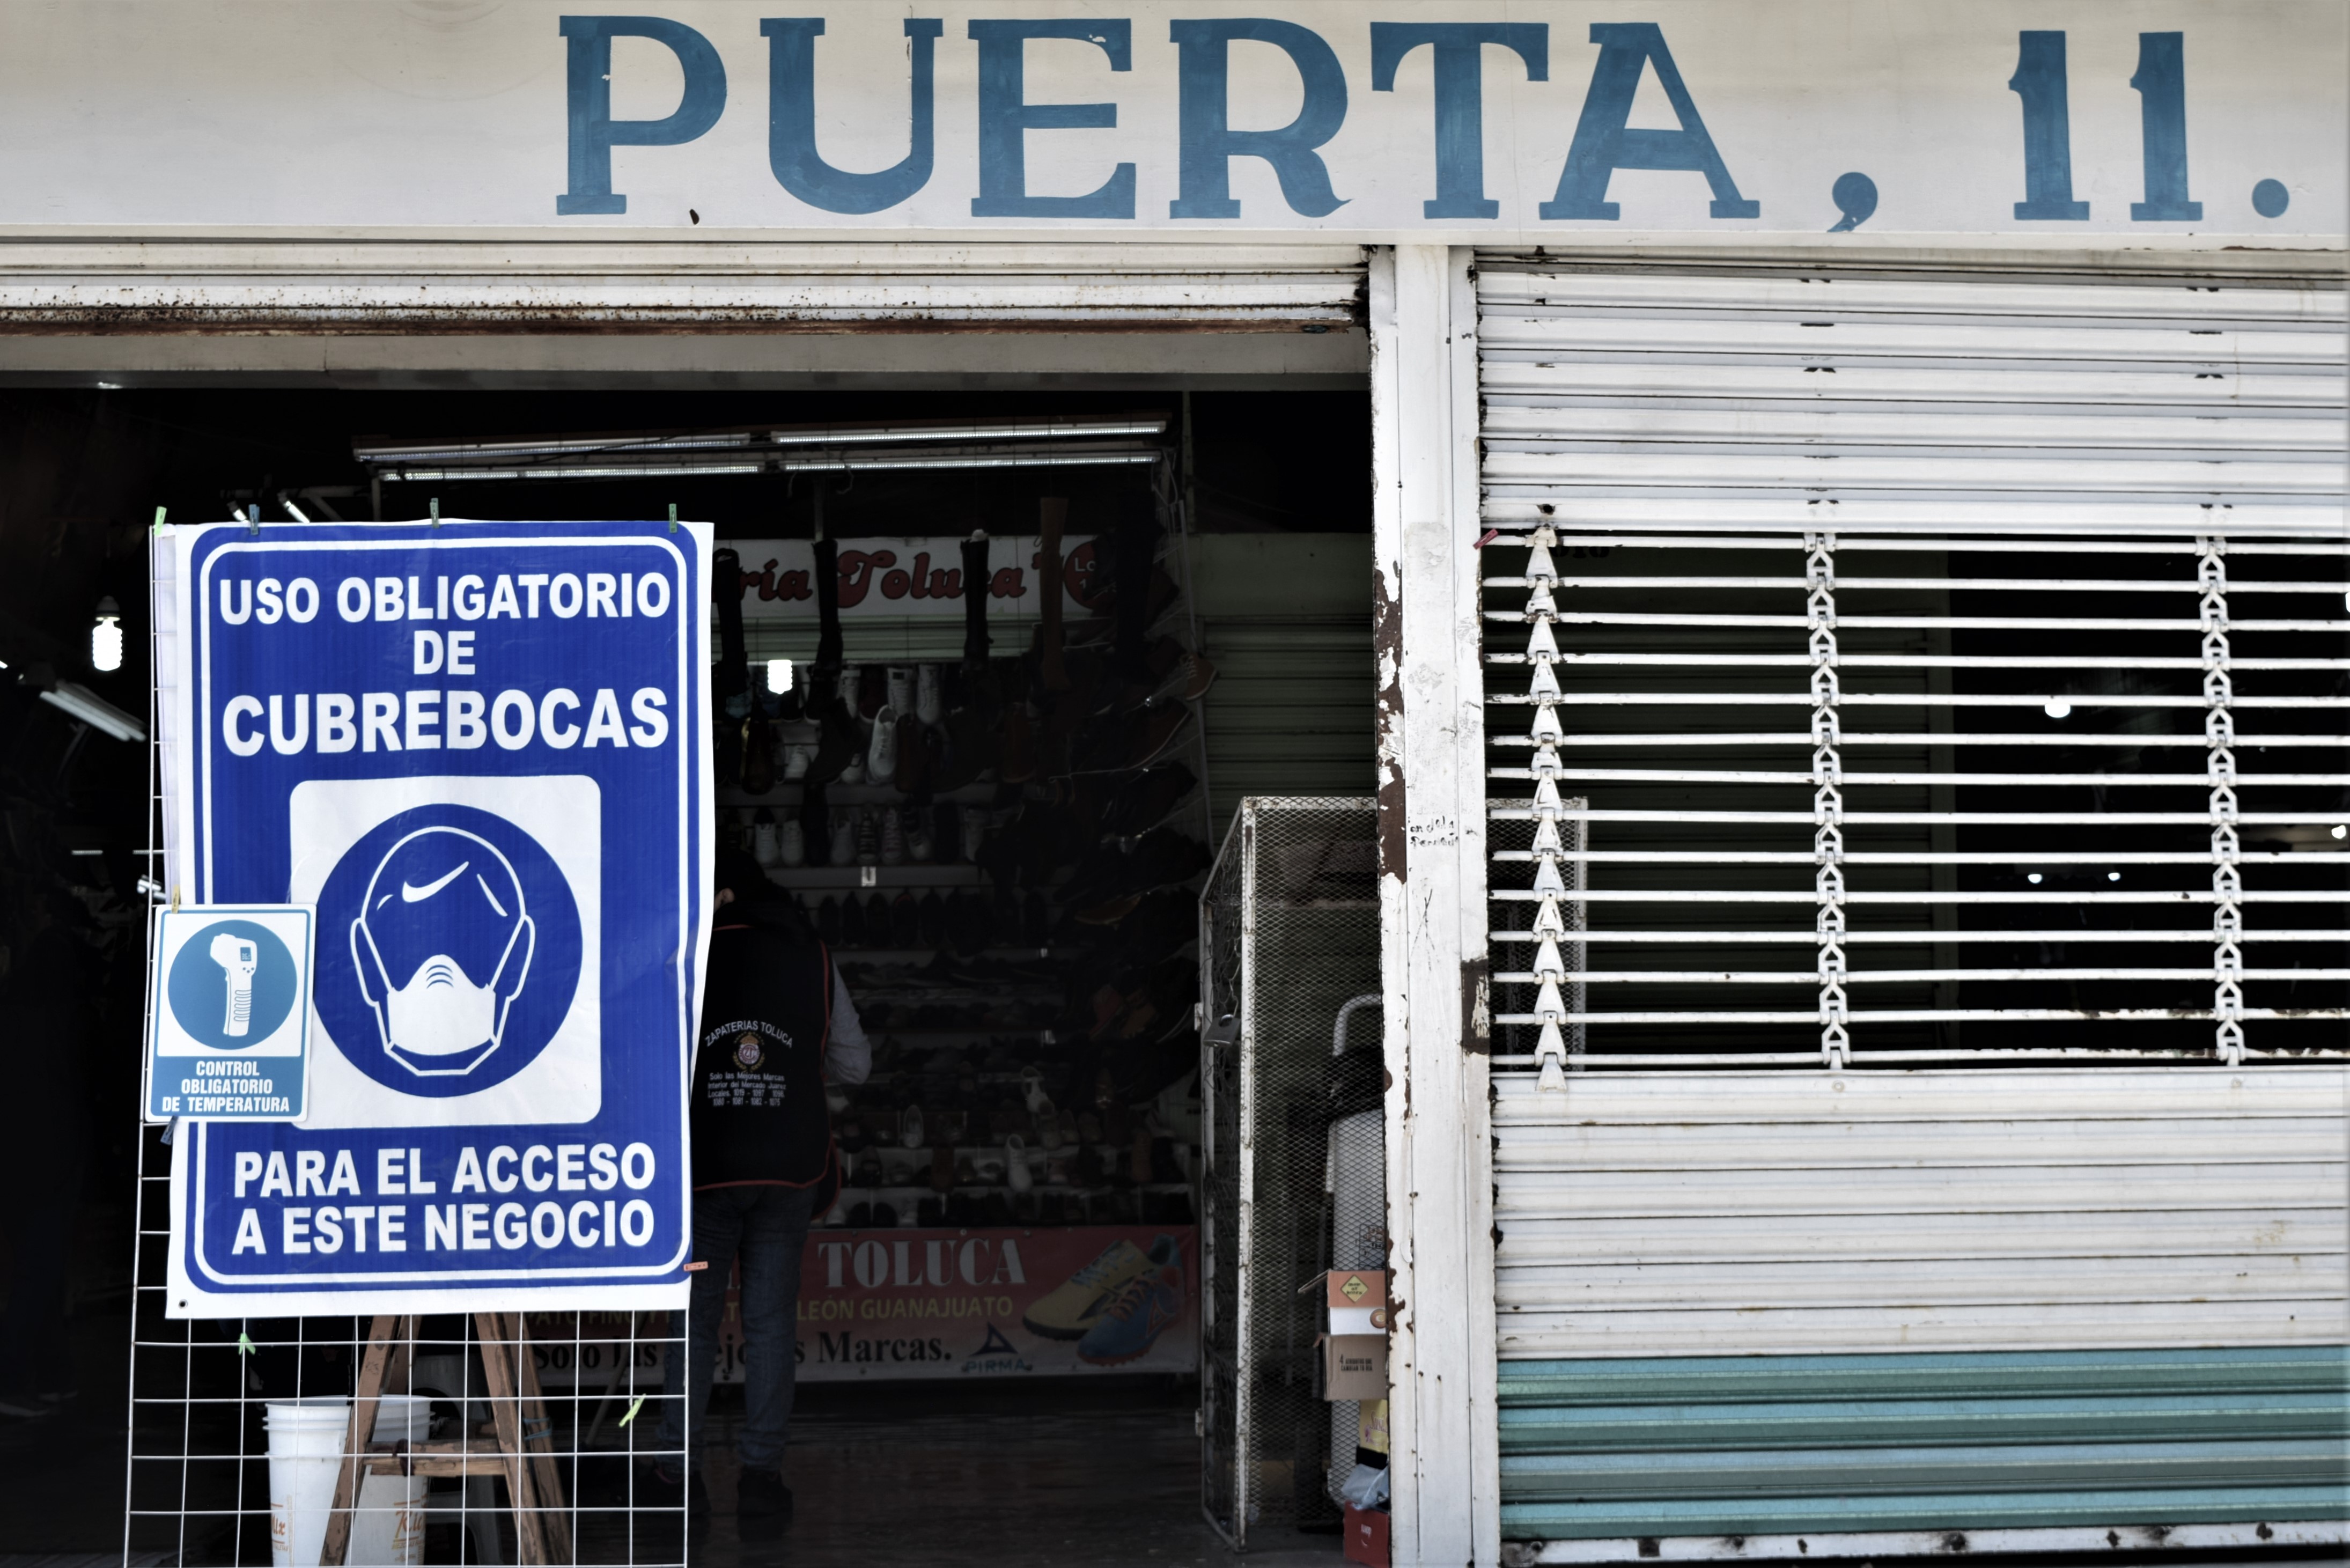 La nueva normalidad en el Mercado Juárez, una adptación complicada pero esperanzadora  